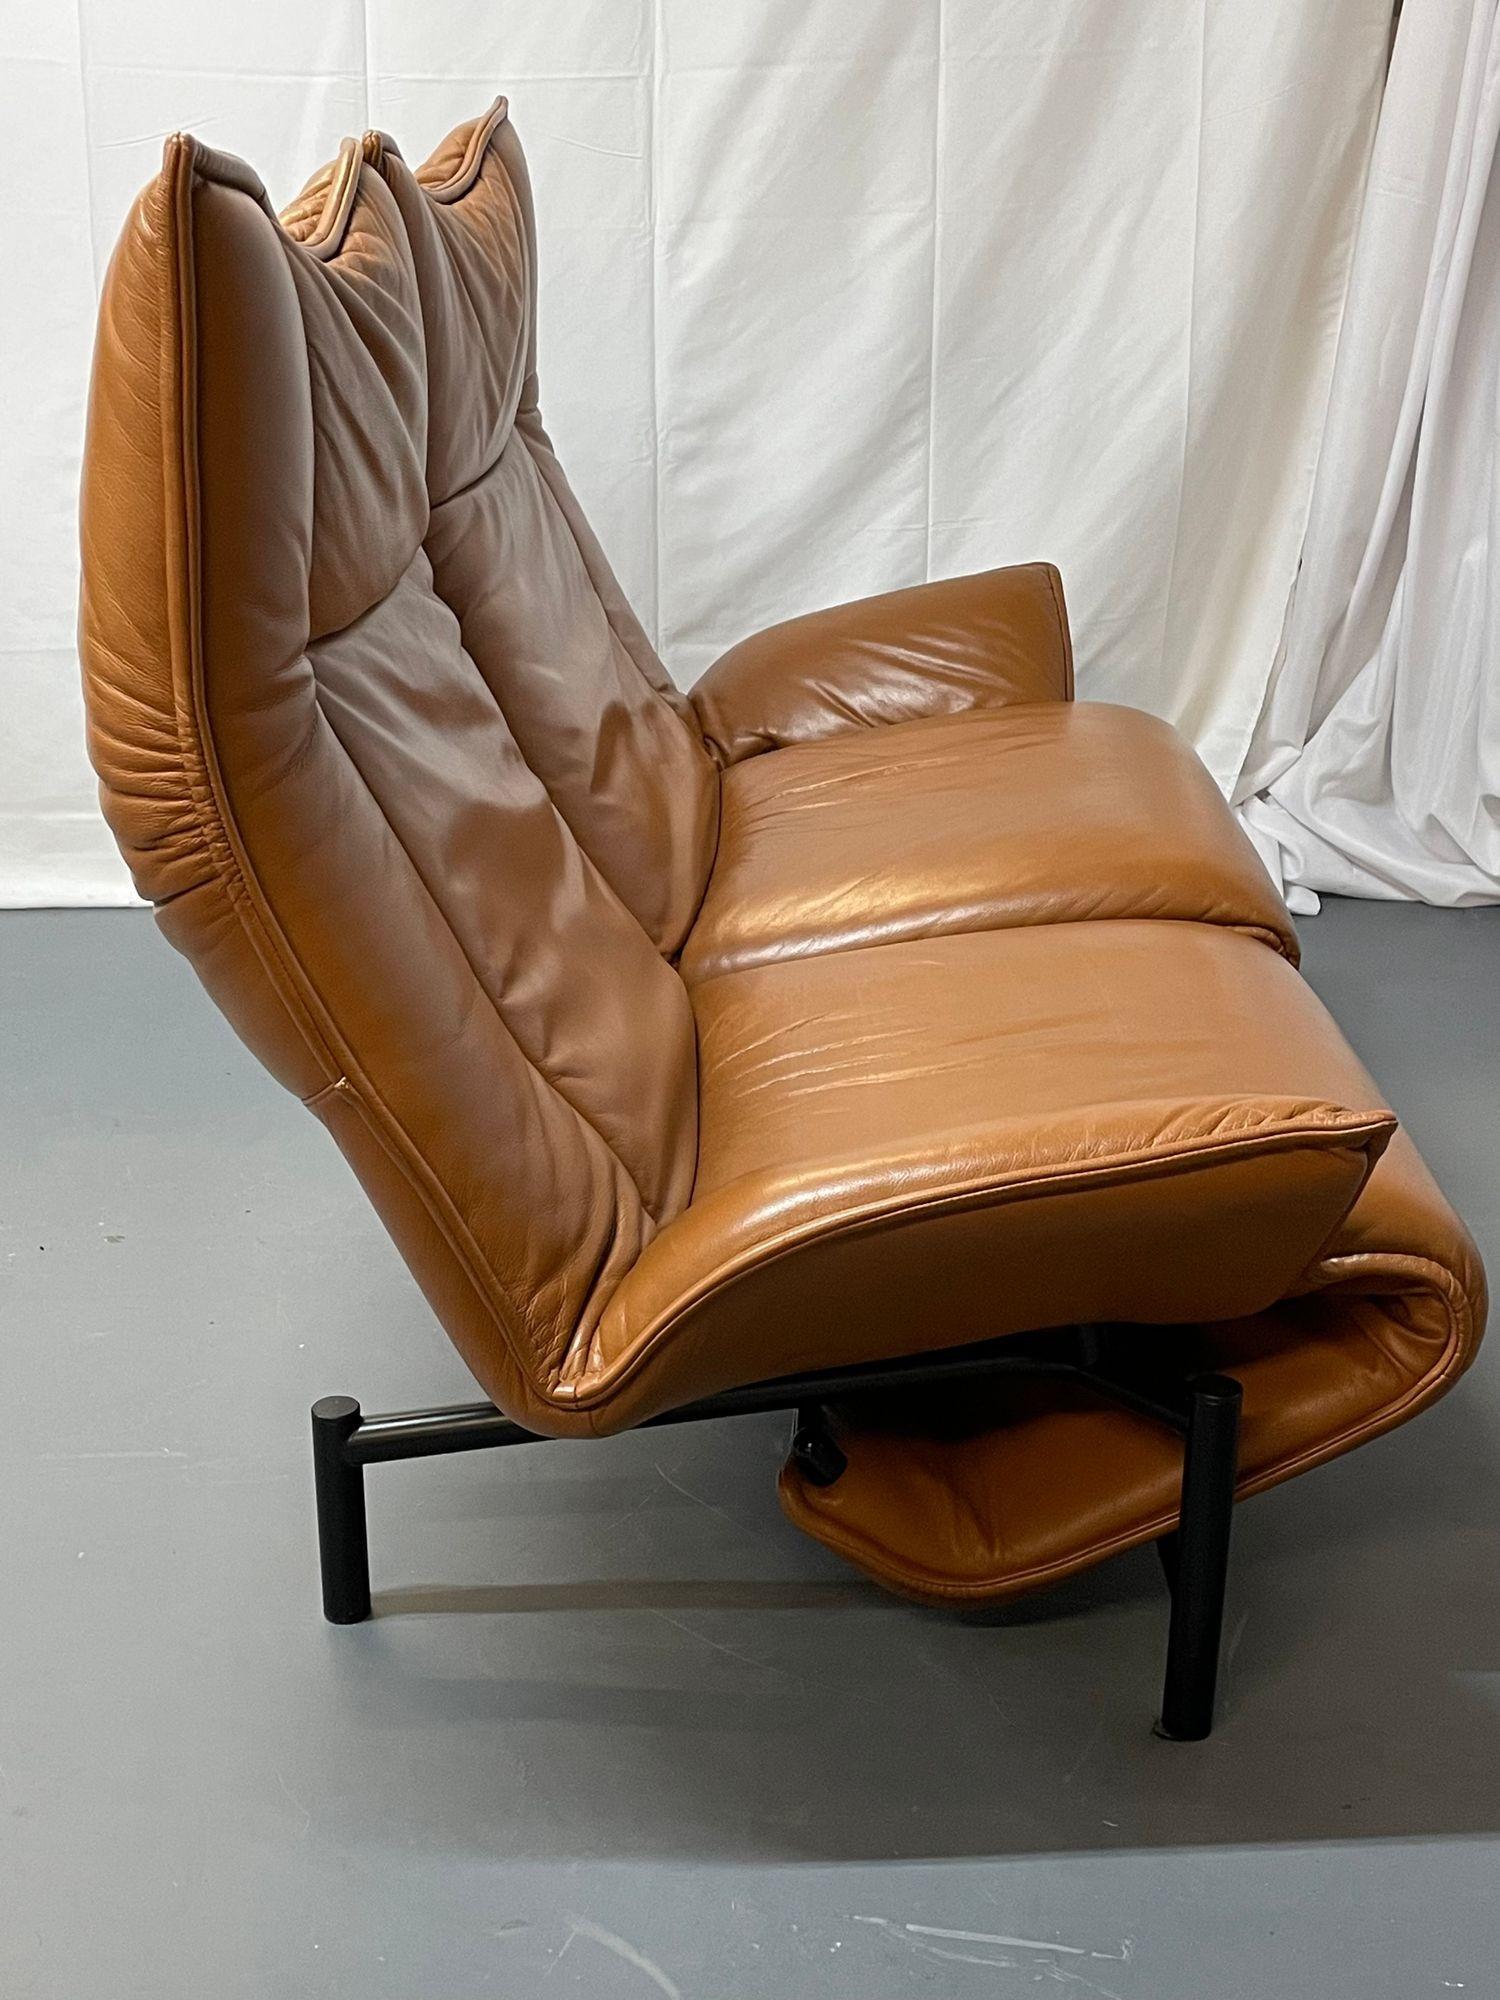 Steel Vico Magistretti for Cassina Veranda Sofa, Two-Seater, Leather, Italian Modern For Sale